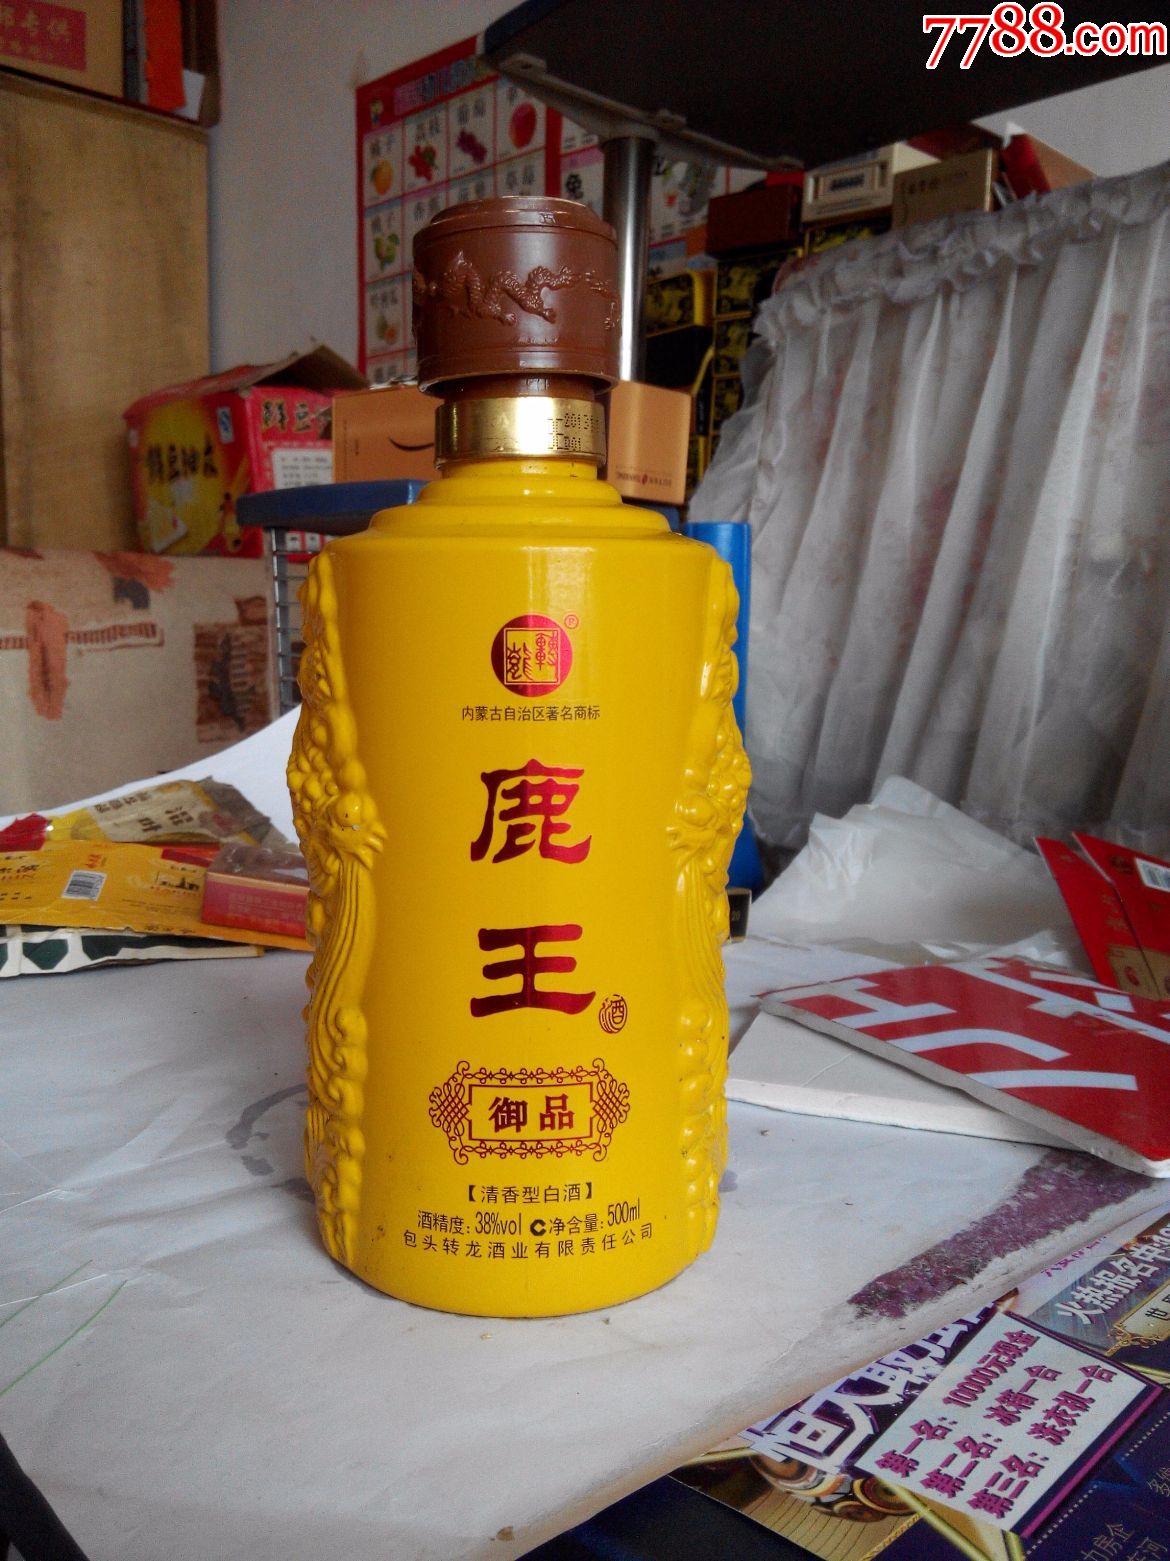 鹿王酒瓶